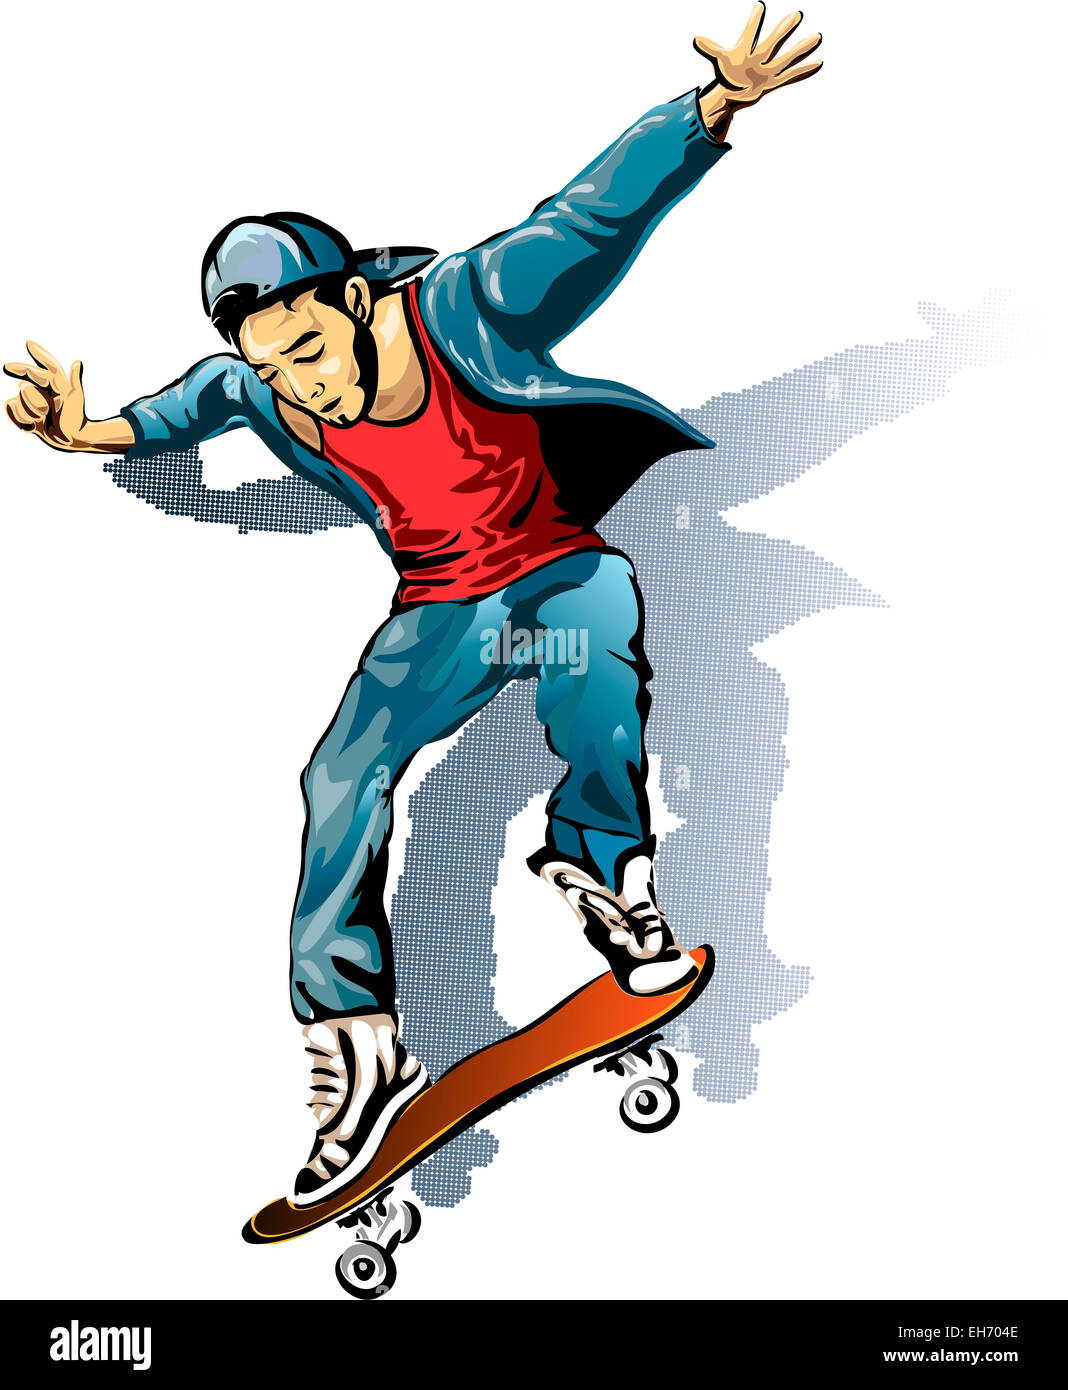 Abbildung mit jungen Mann auf dem Skateboard in Skizze Stil gezeichnet  Stockfotografie - Alamy